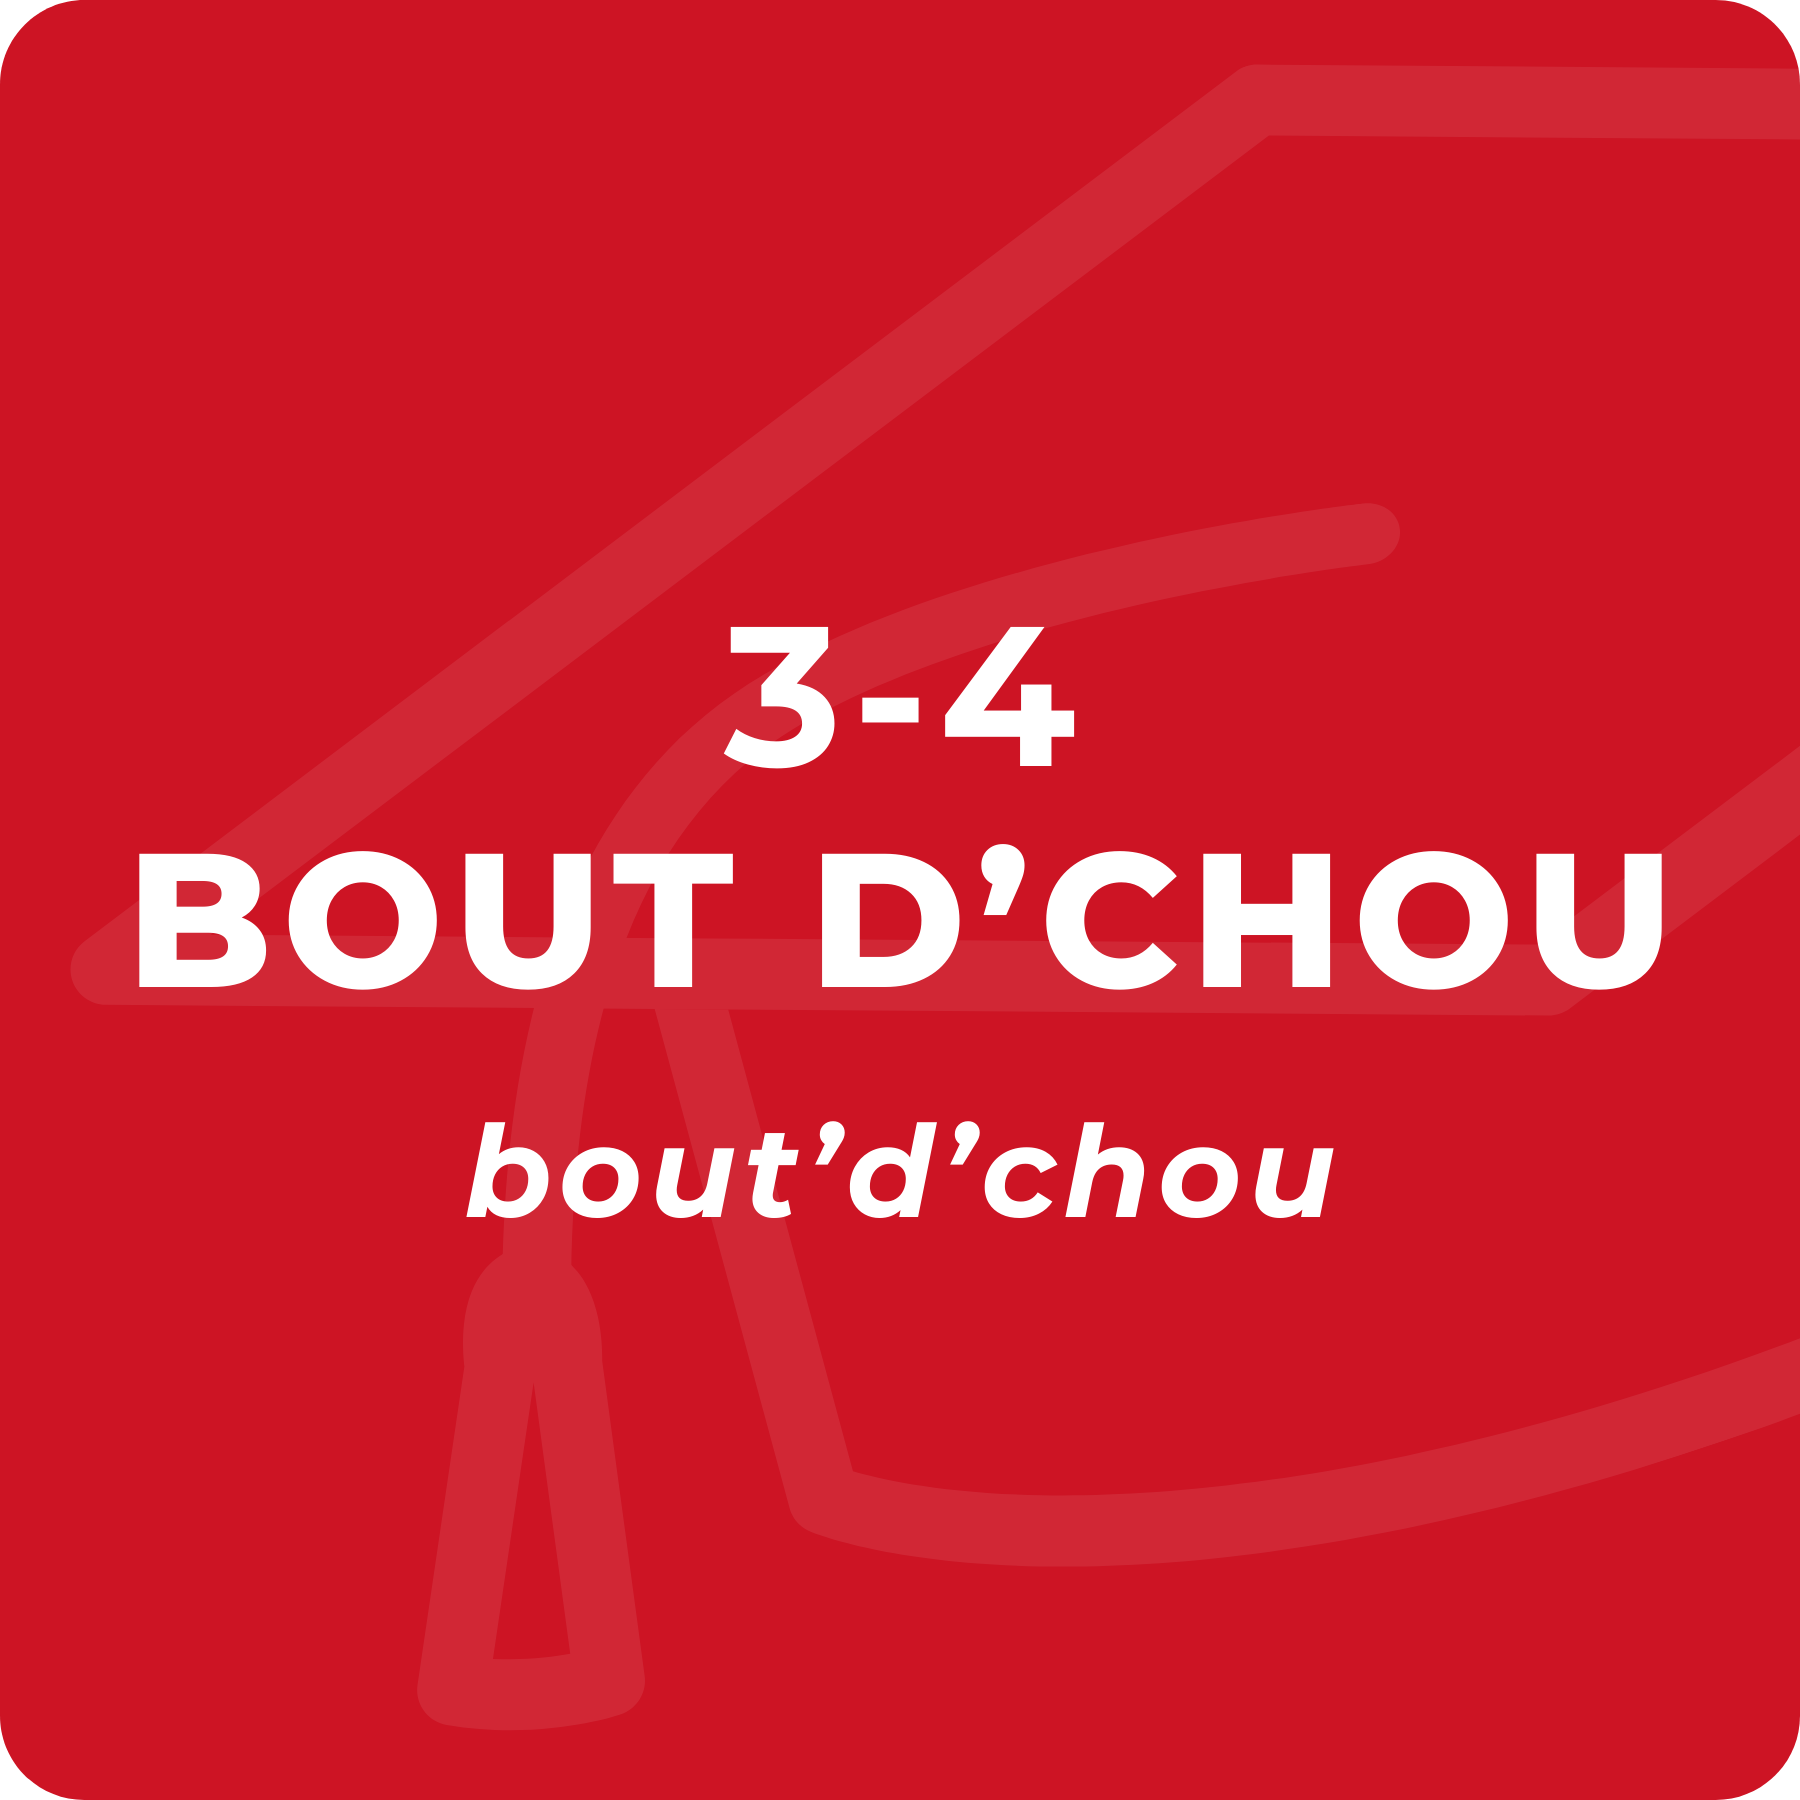 Bout d'chou (3-4 YO)